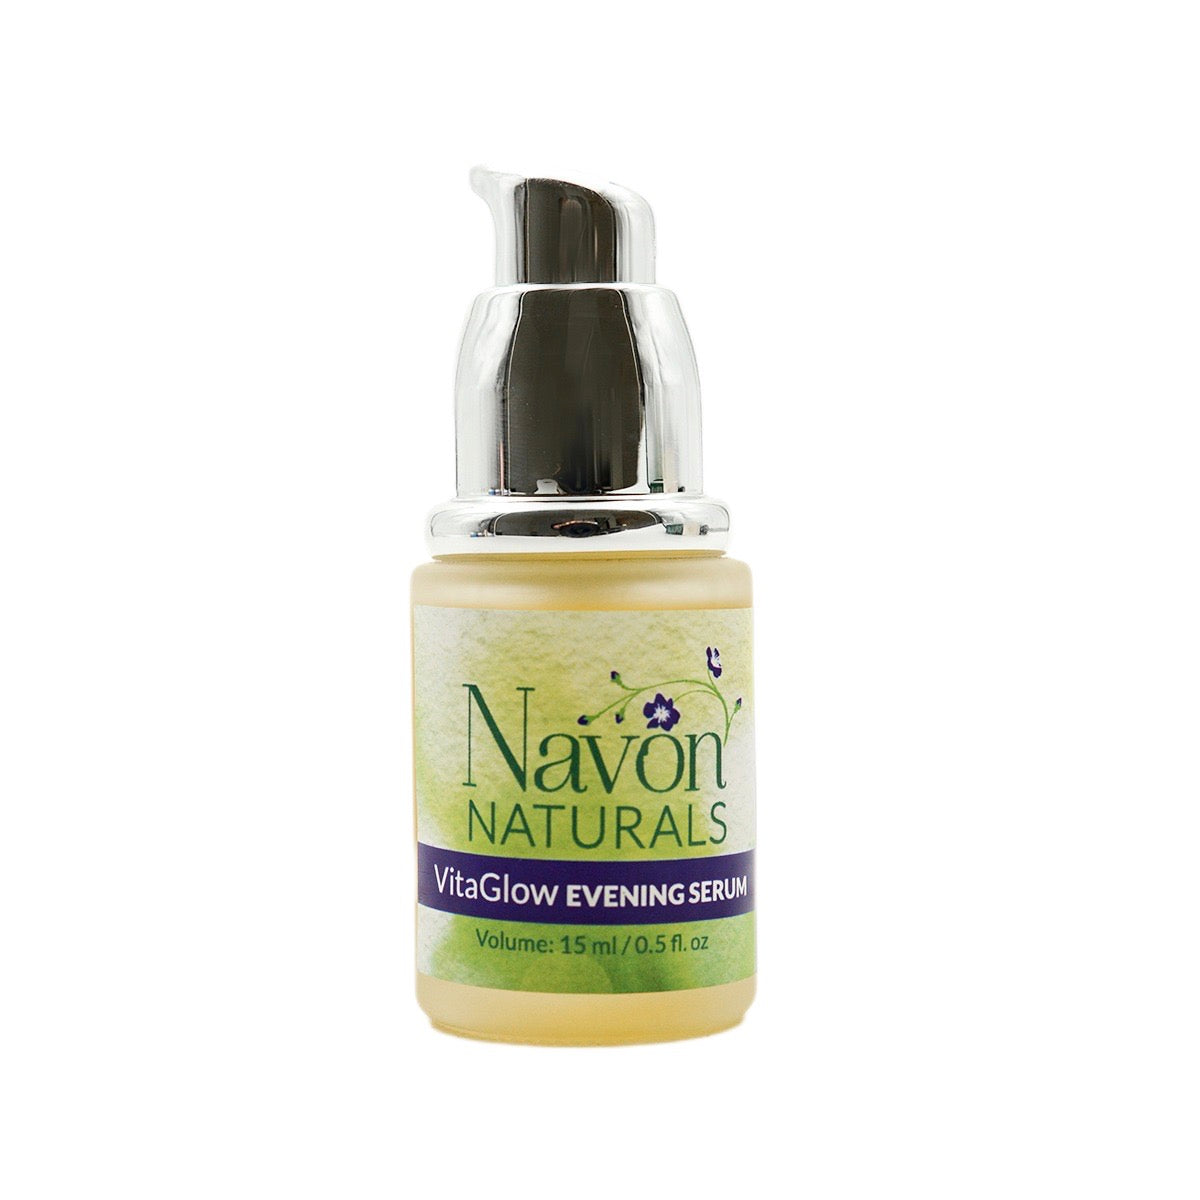 VitaGlow Evening Serum - Navon Naturals Skincare